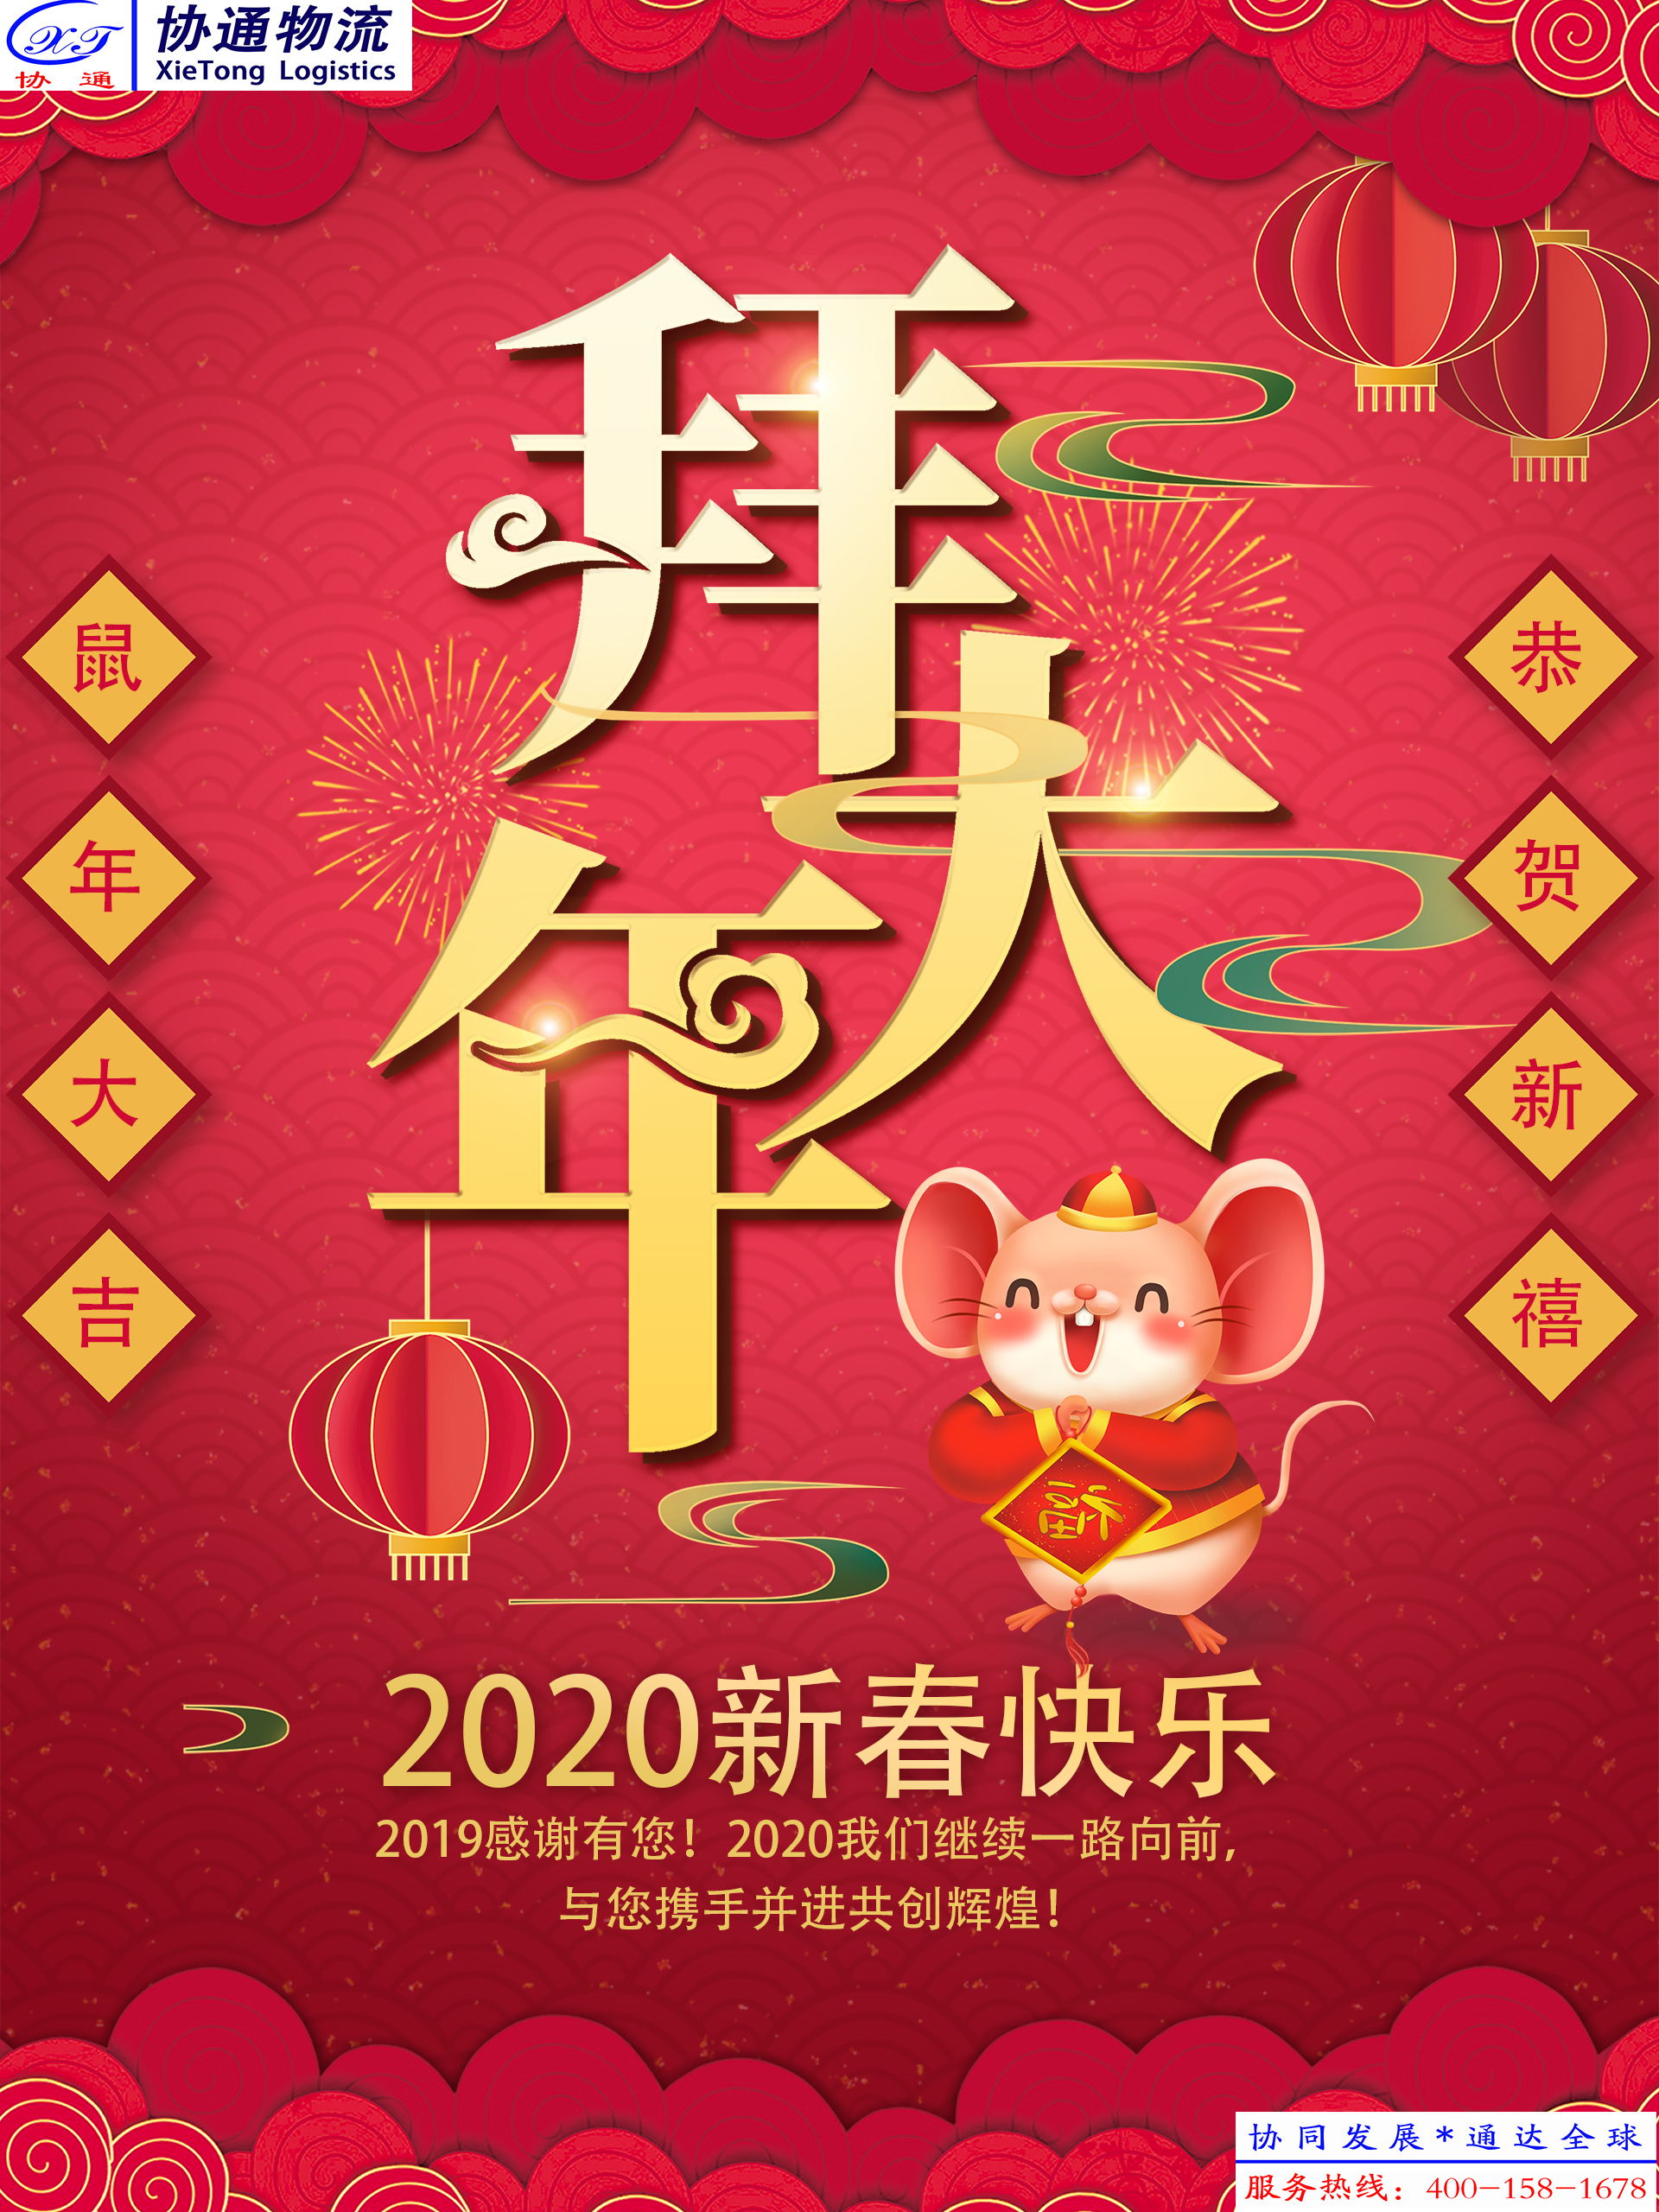 重庆协通国际物流有限公司祝大家新春快乐